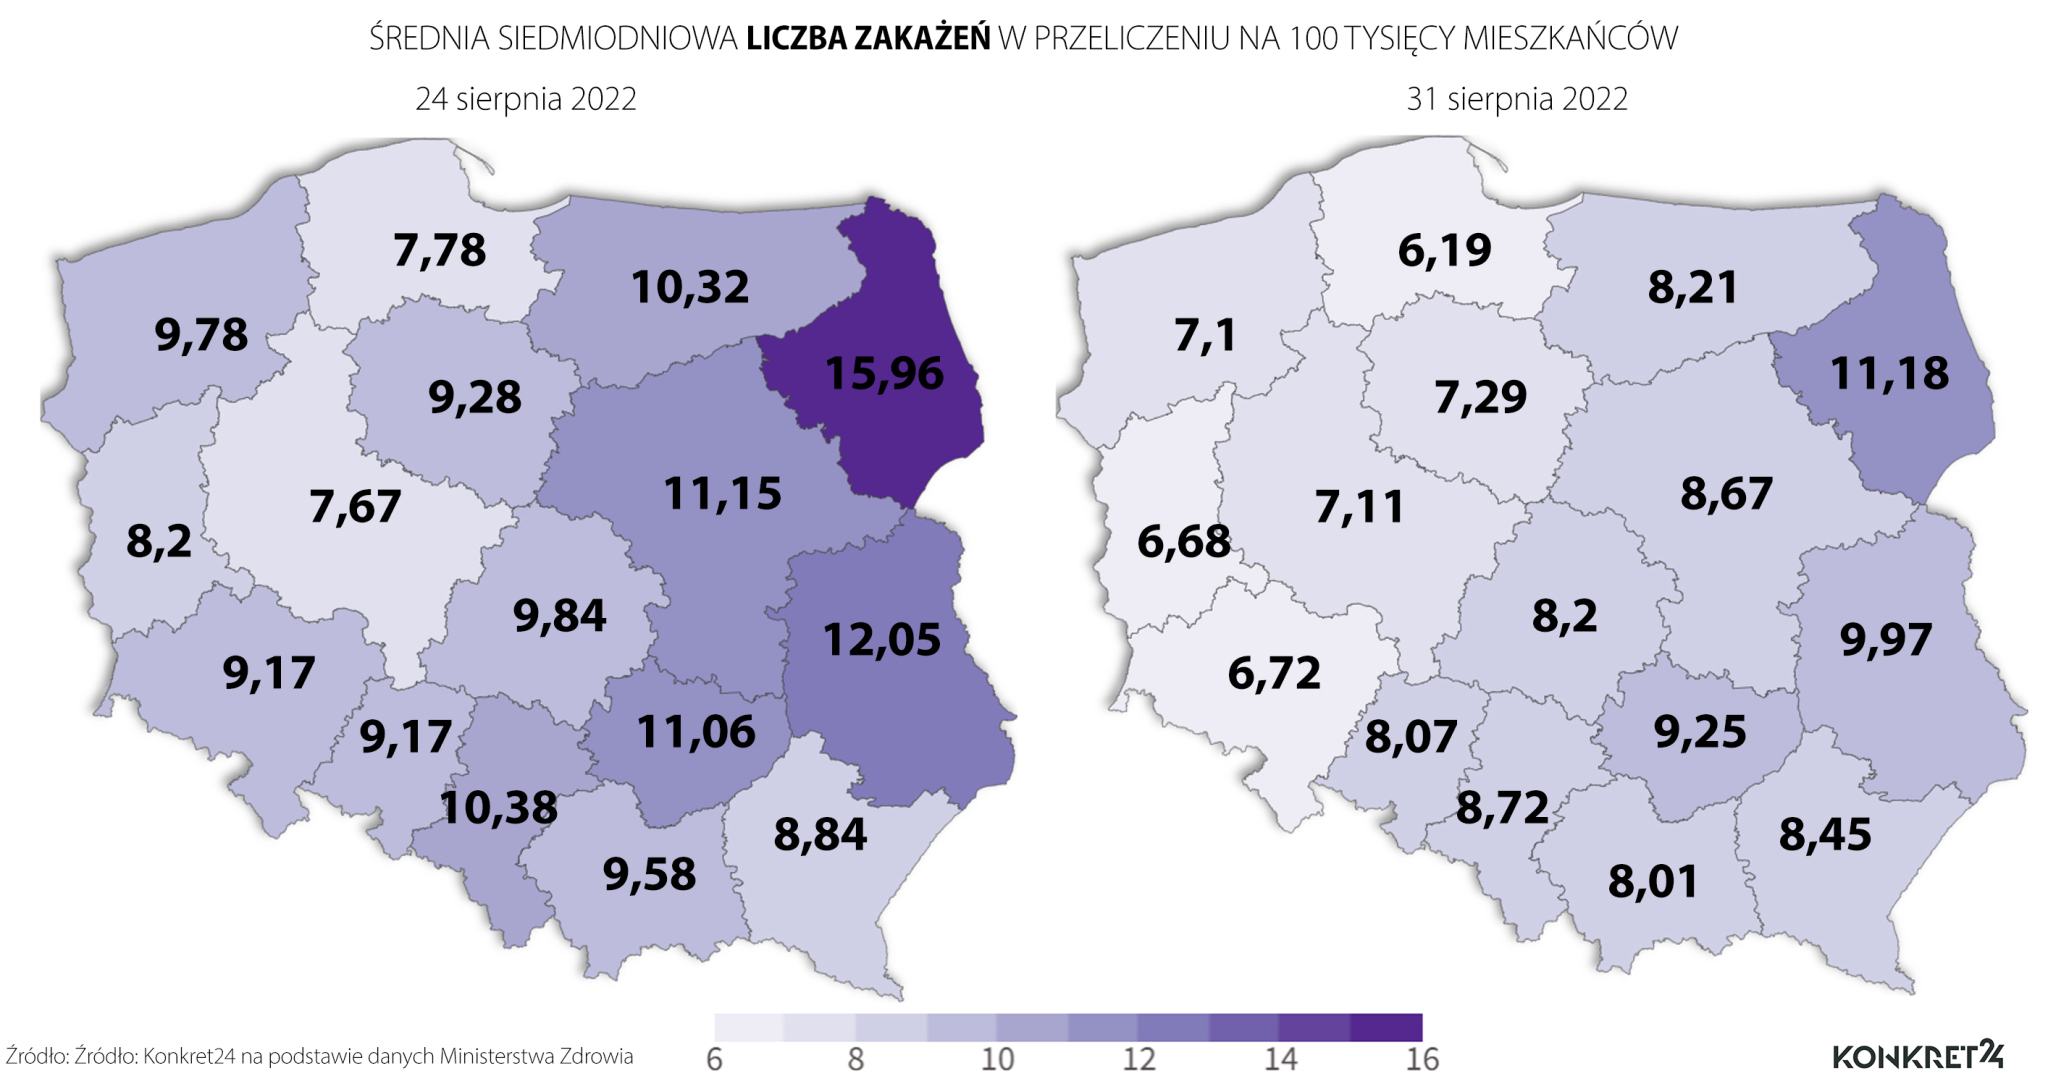 Średnia siedmiodniowa liczba zakażeń w przeliczeniu na 100 tysięcy mieszkańców województw (24 i 31 sierpnia 2022 roku)